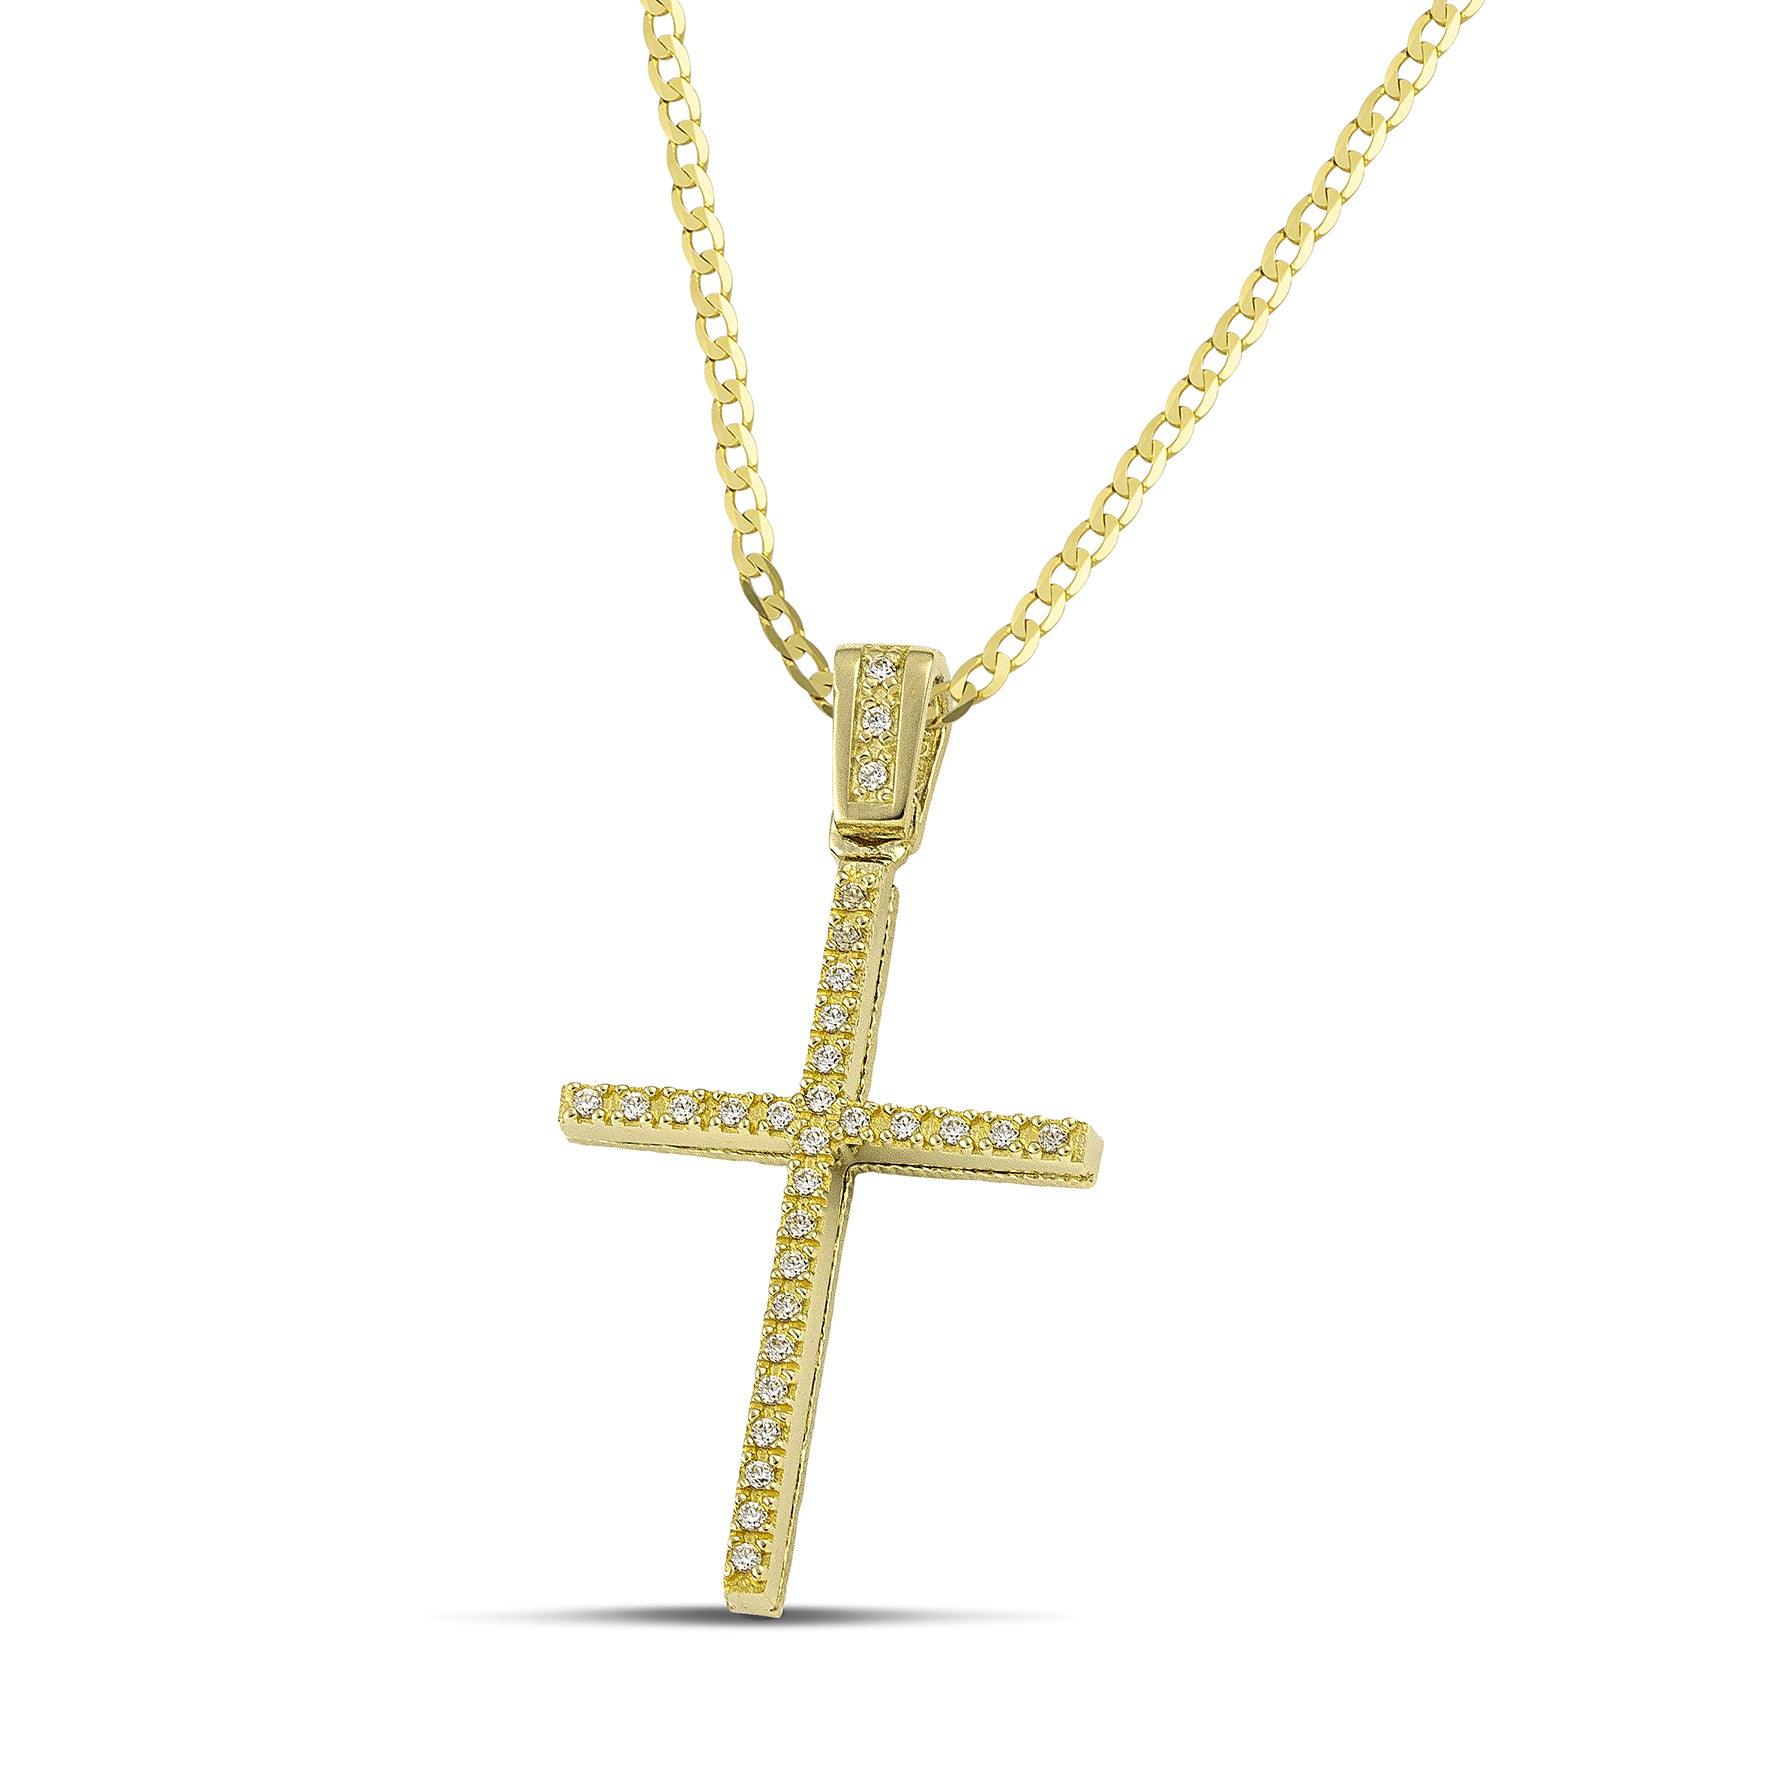 Γυναικείος χρυσός σταυρός για βάπτιση με ζιργκόν, με πλακέ χρυσή αλυσίδα.